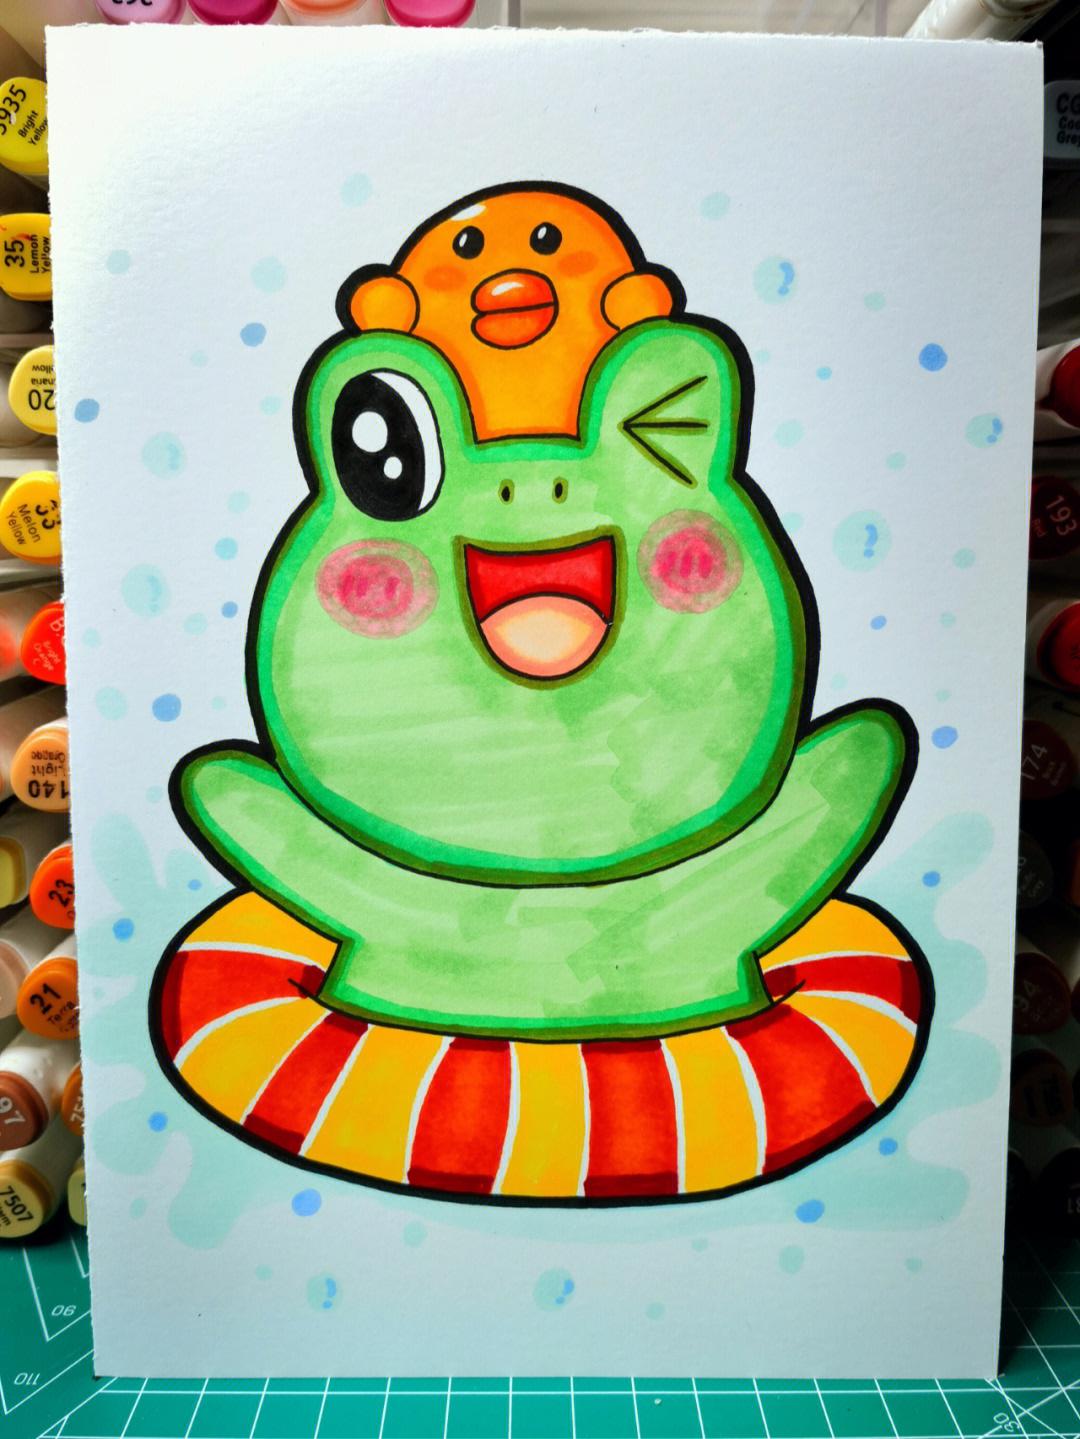 小班美术涂色青蛙图片